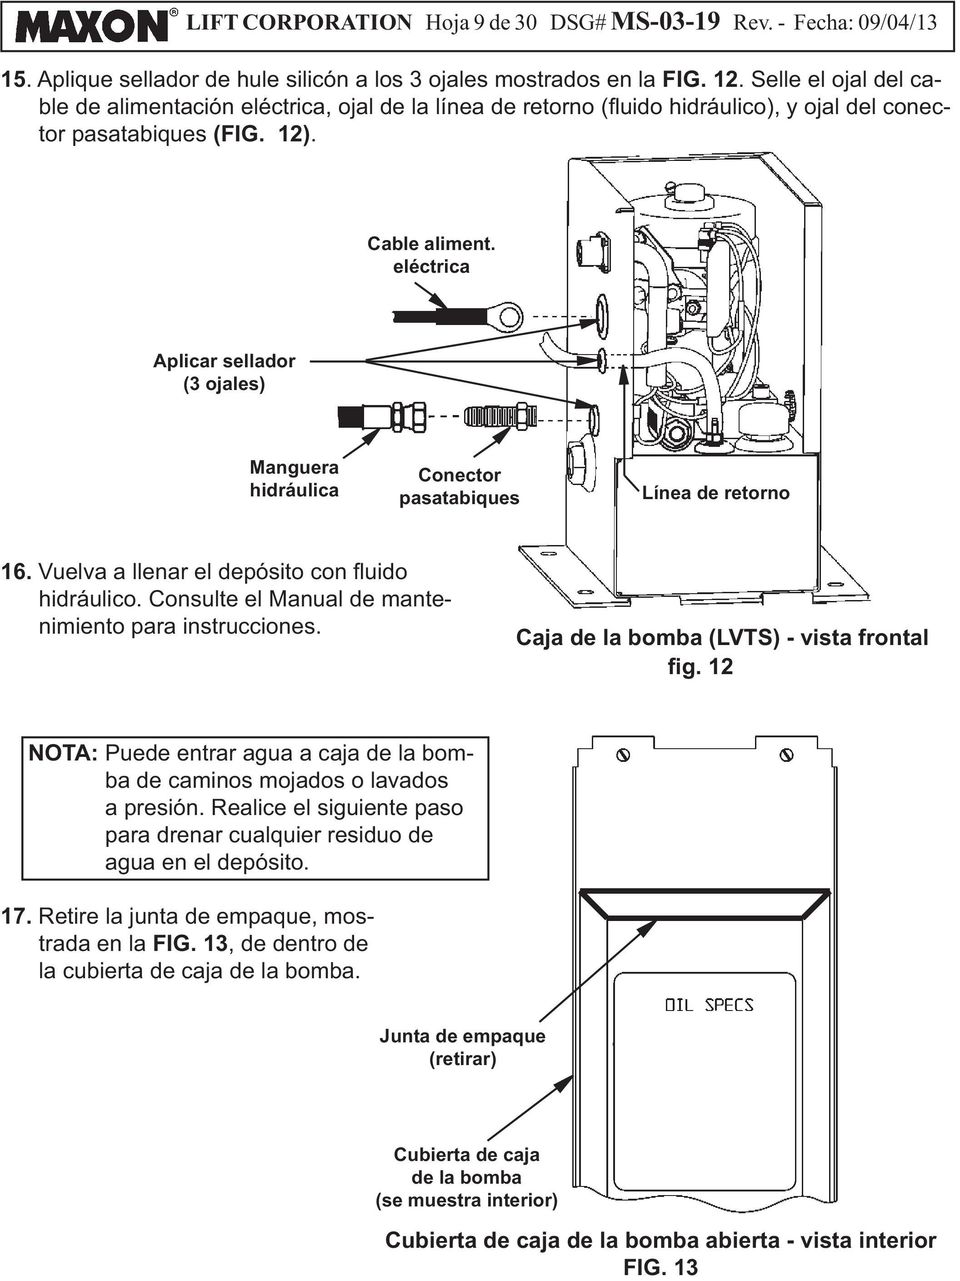 Caja de la bomba (LVTS) - vista frontal NOTA: Puede entrar agua a caja de la bomba de caminos mojados o lavados a presión.